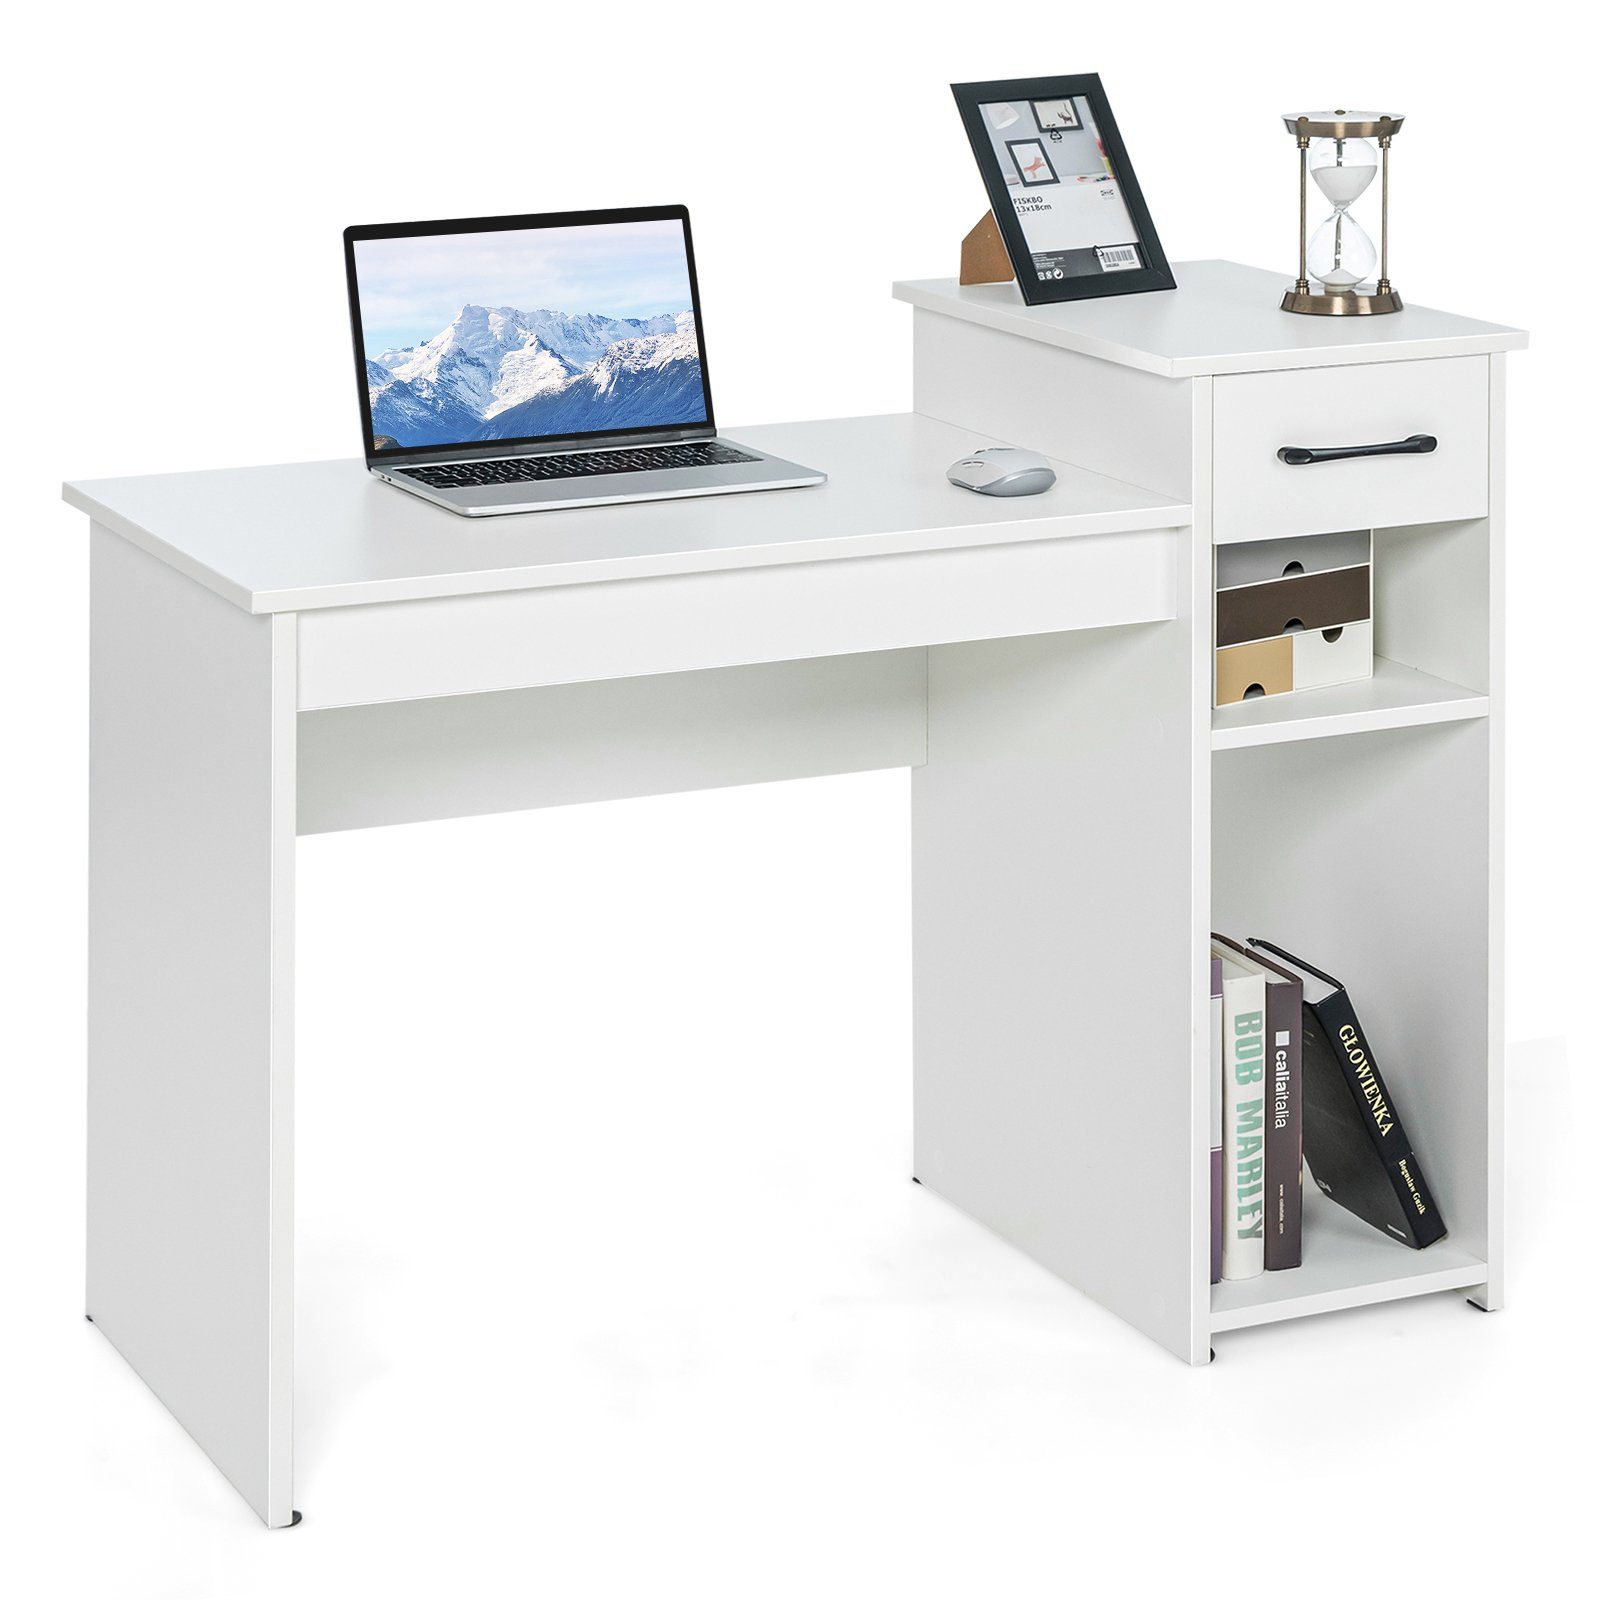 COSTWAY Schreibtisch, mit Schublade & offenen Regalen, 104x50x82cm